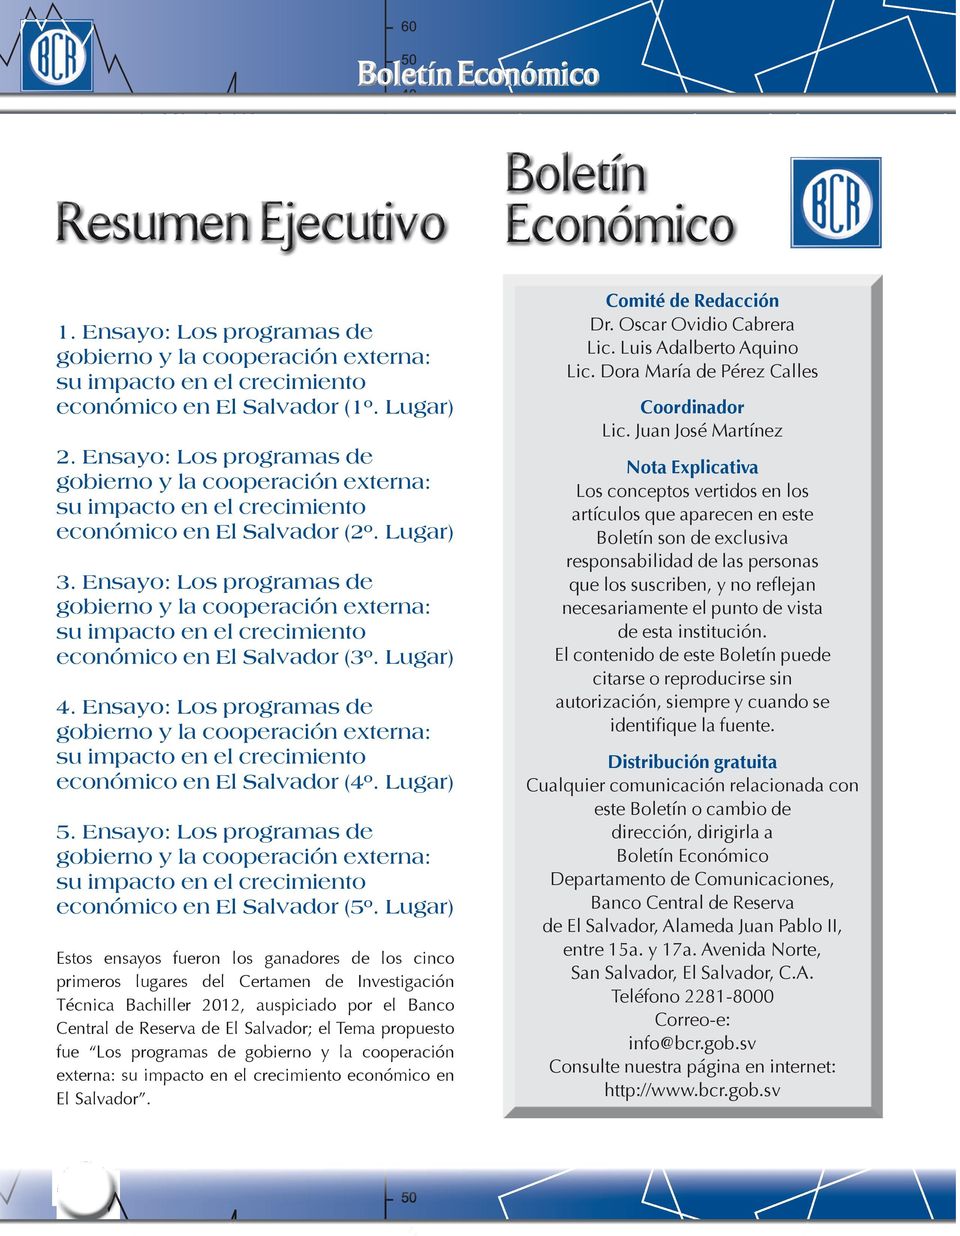 Ensayo: Los programas de gobierno y la cooperación externa: su impacto en el crecimiento económico en El Salvador (3º. Lugar) 4.